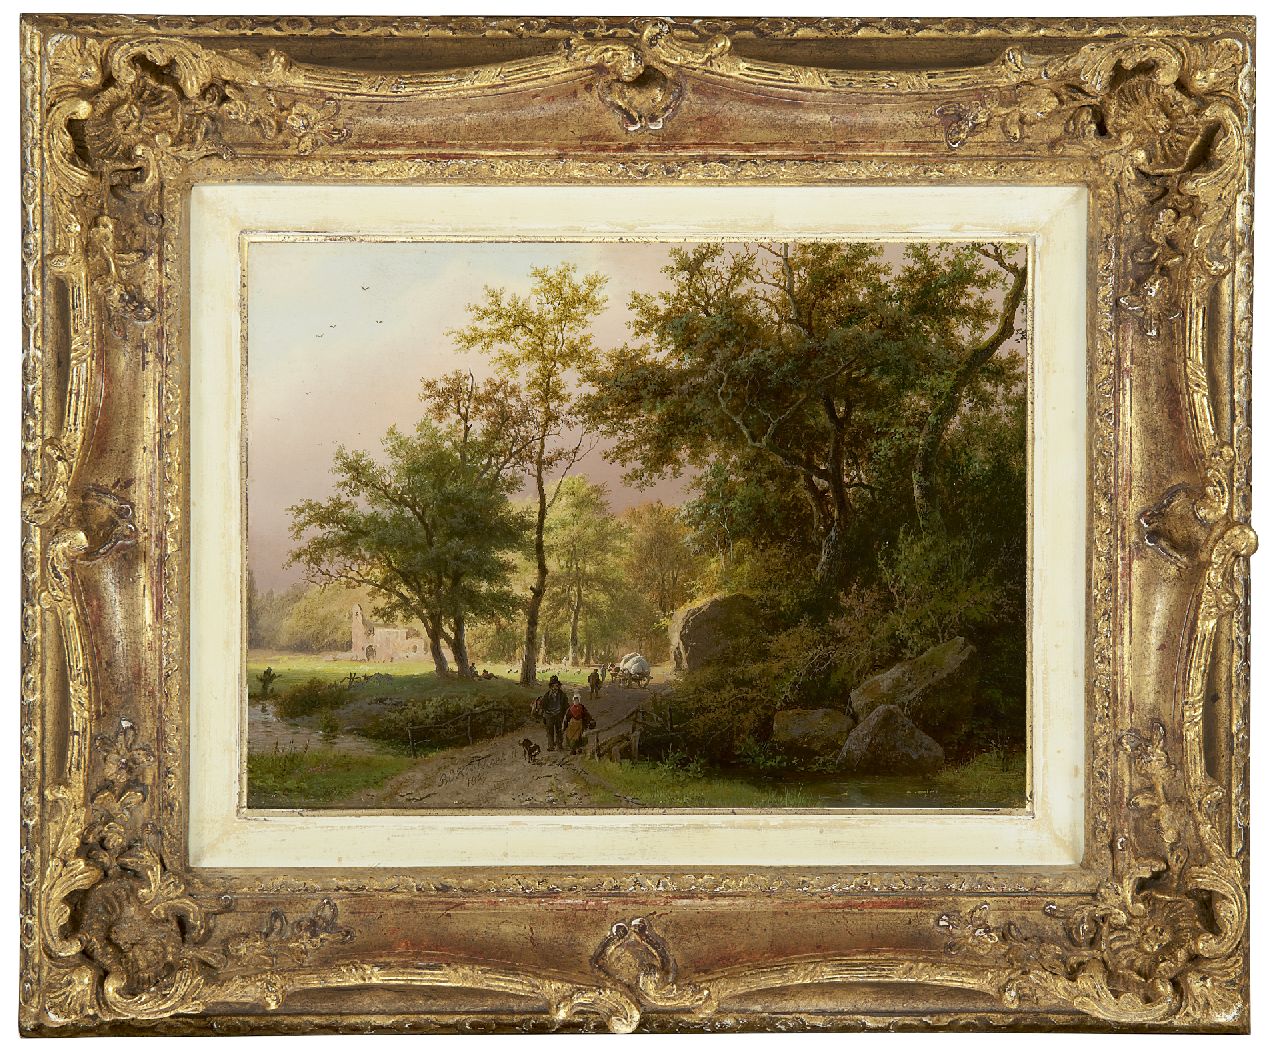 Koekkoek B.C.  | Barend Cornelis Koekkoek, Landvolk op een bospad bij een ruïne, olieverf op paneel 17,7 x 24,4 cm, gesigneerd middenonder en gedateerd 1849